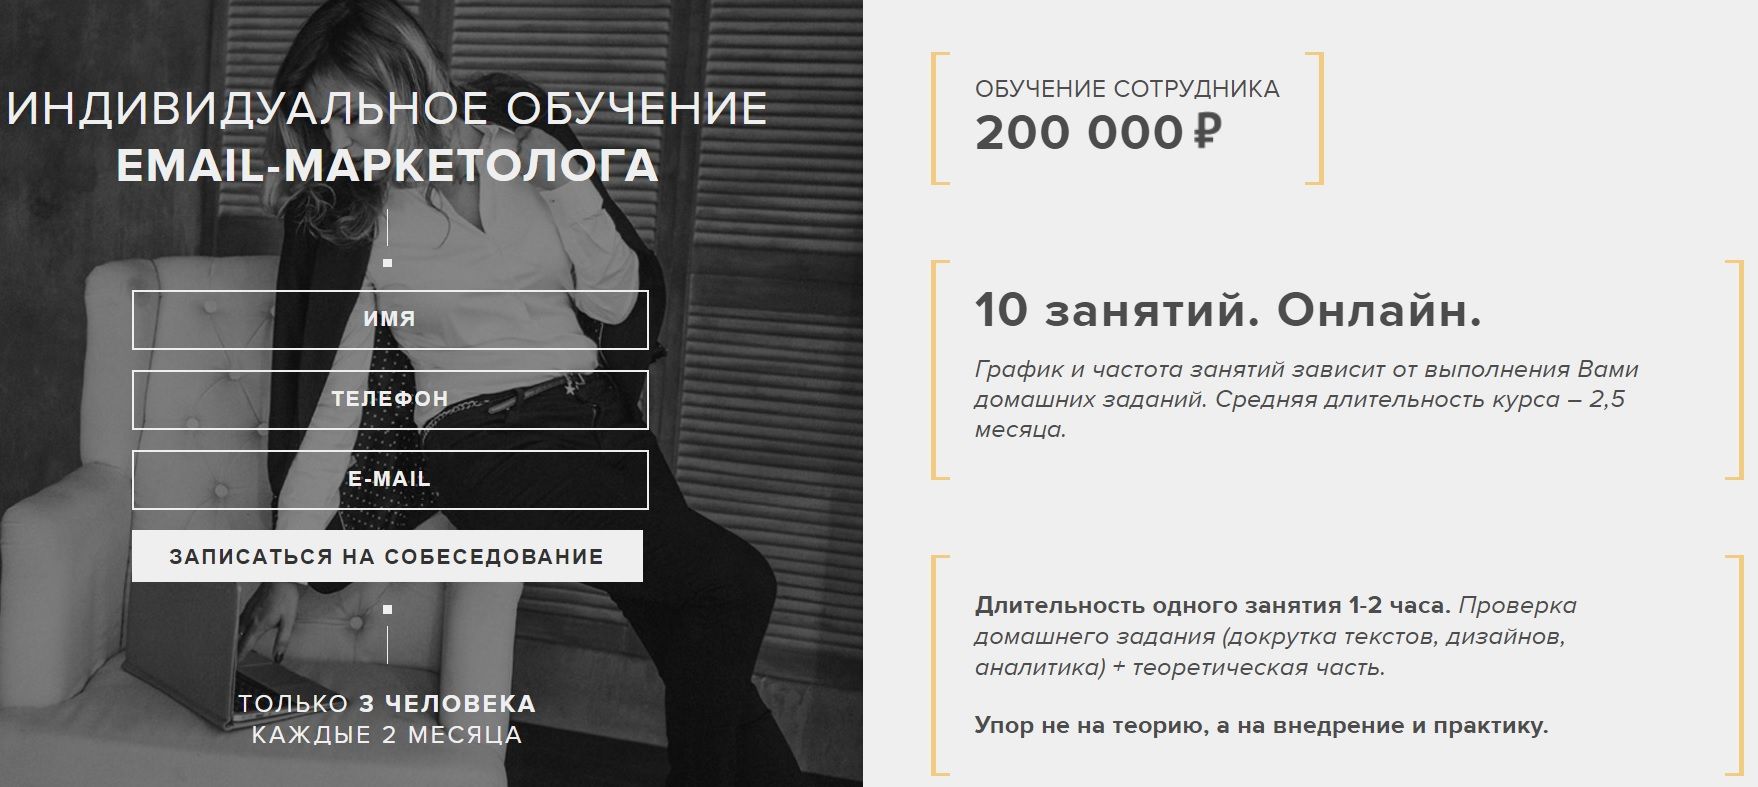 Курс, который ведет автор с опытом 7 лет. Цена – 200 000 рублей за 2,5 месяца обучения